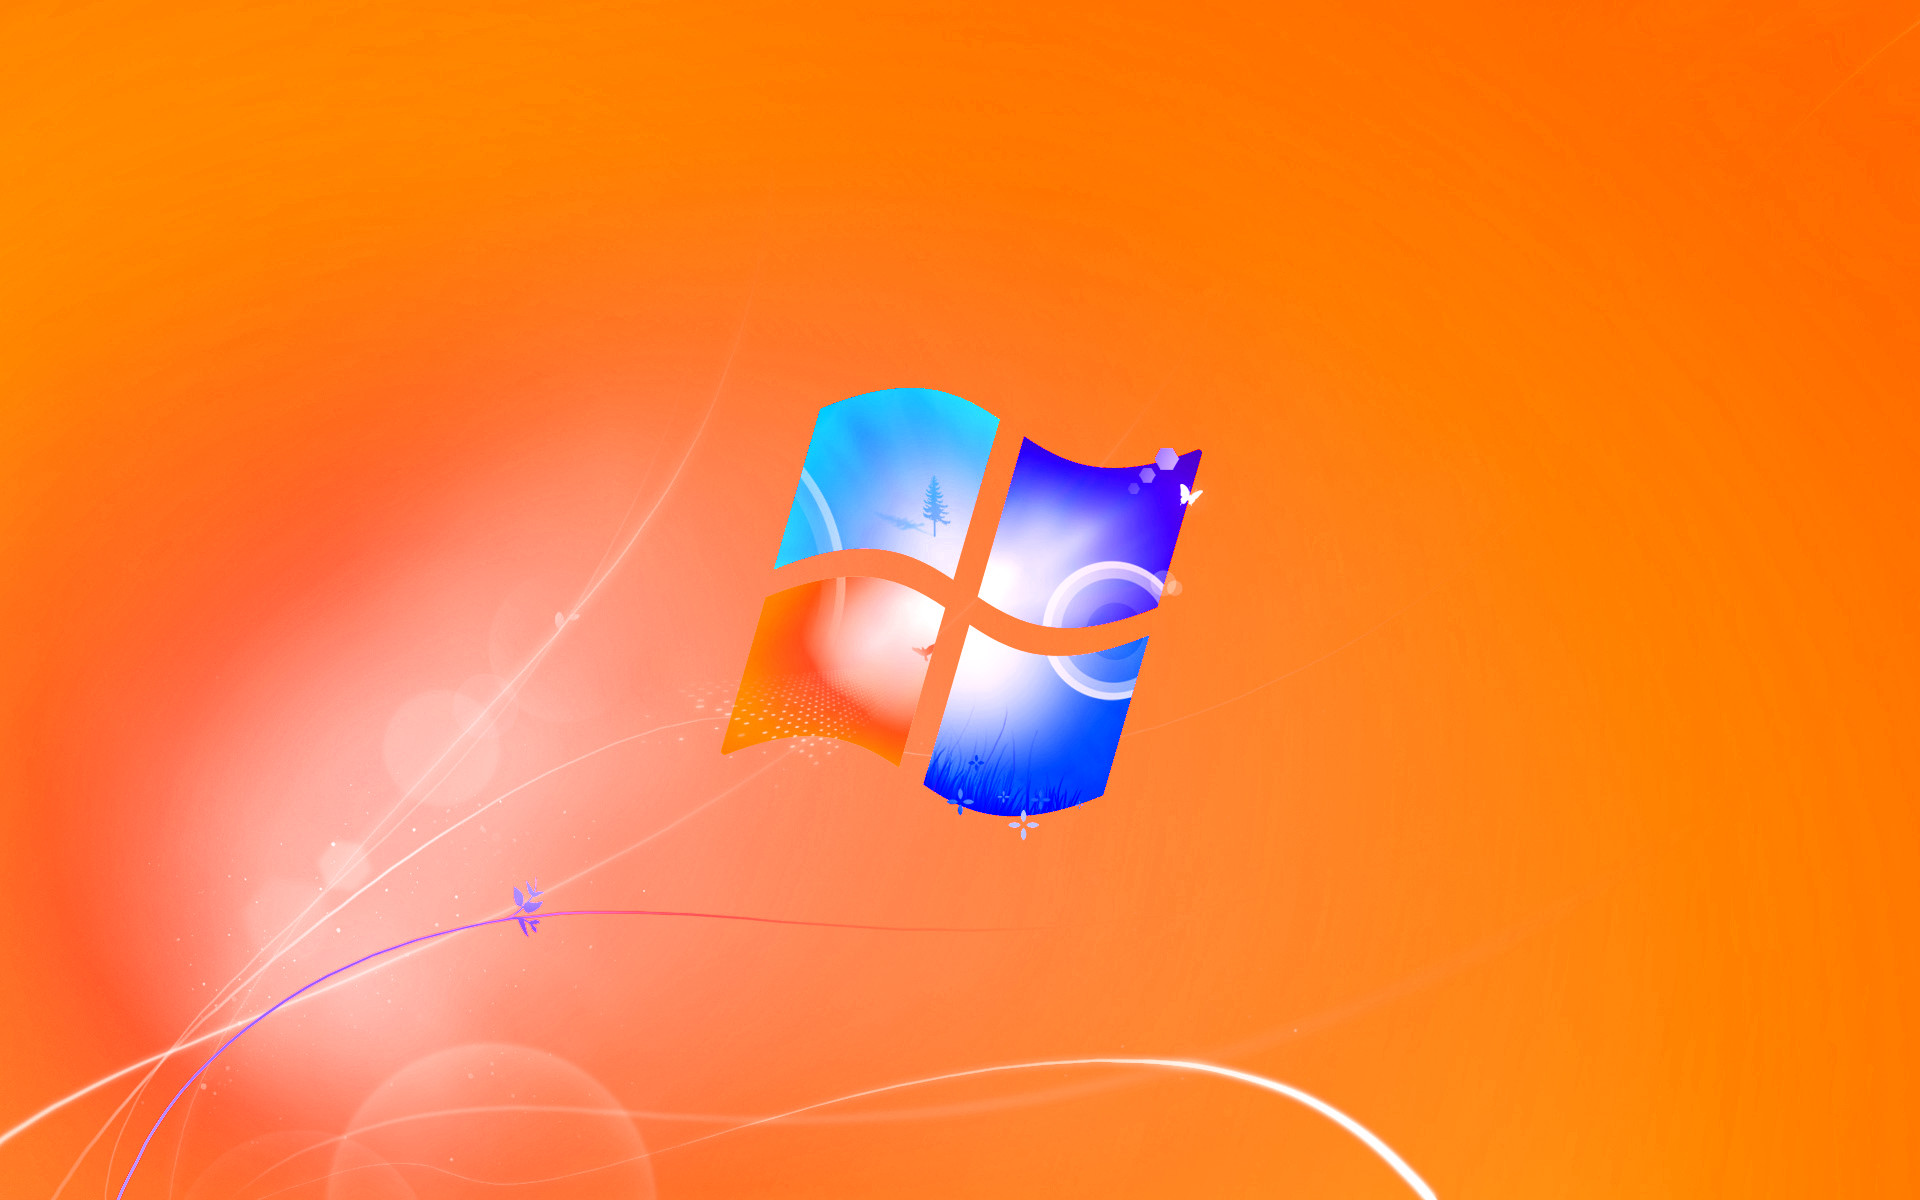 fantastici sfondi per windows 7,sistema operativo,blu,arancia,leggero,disegno grafico